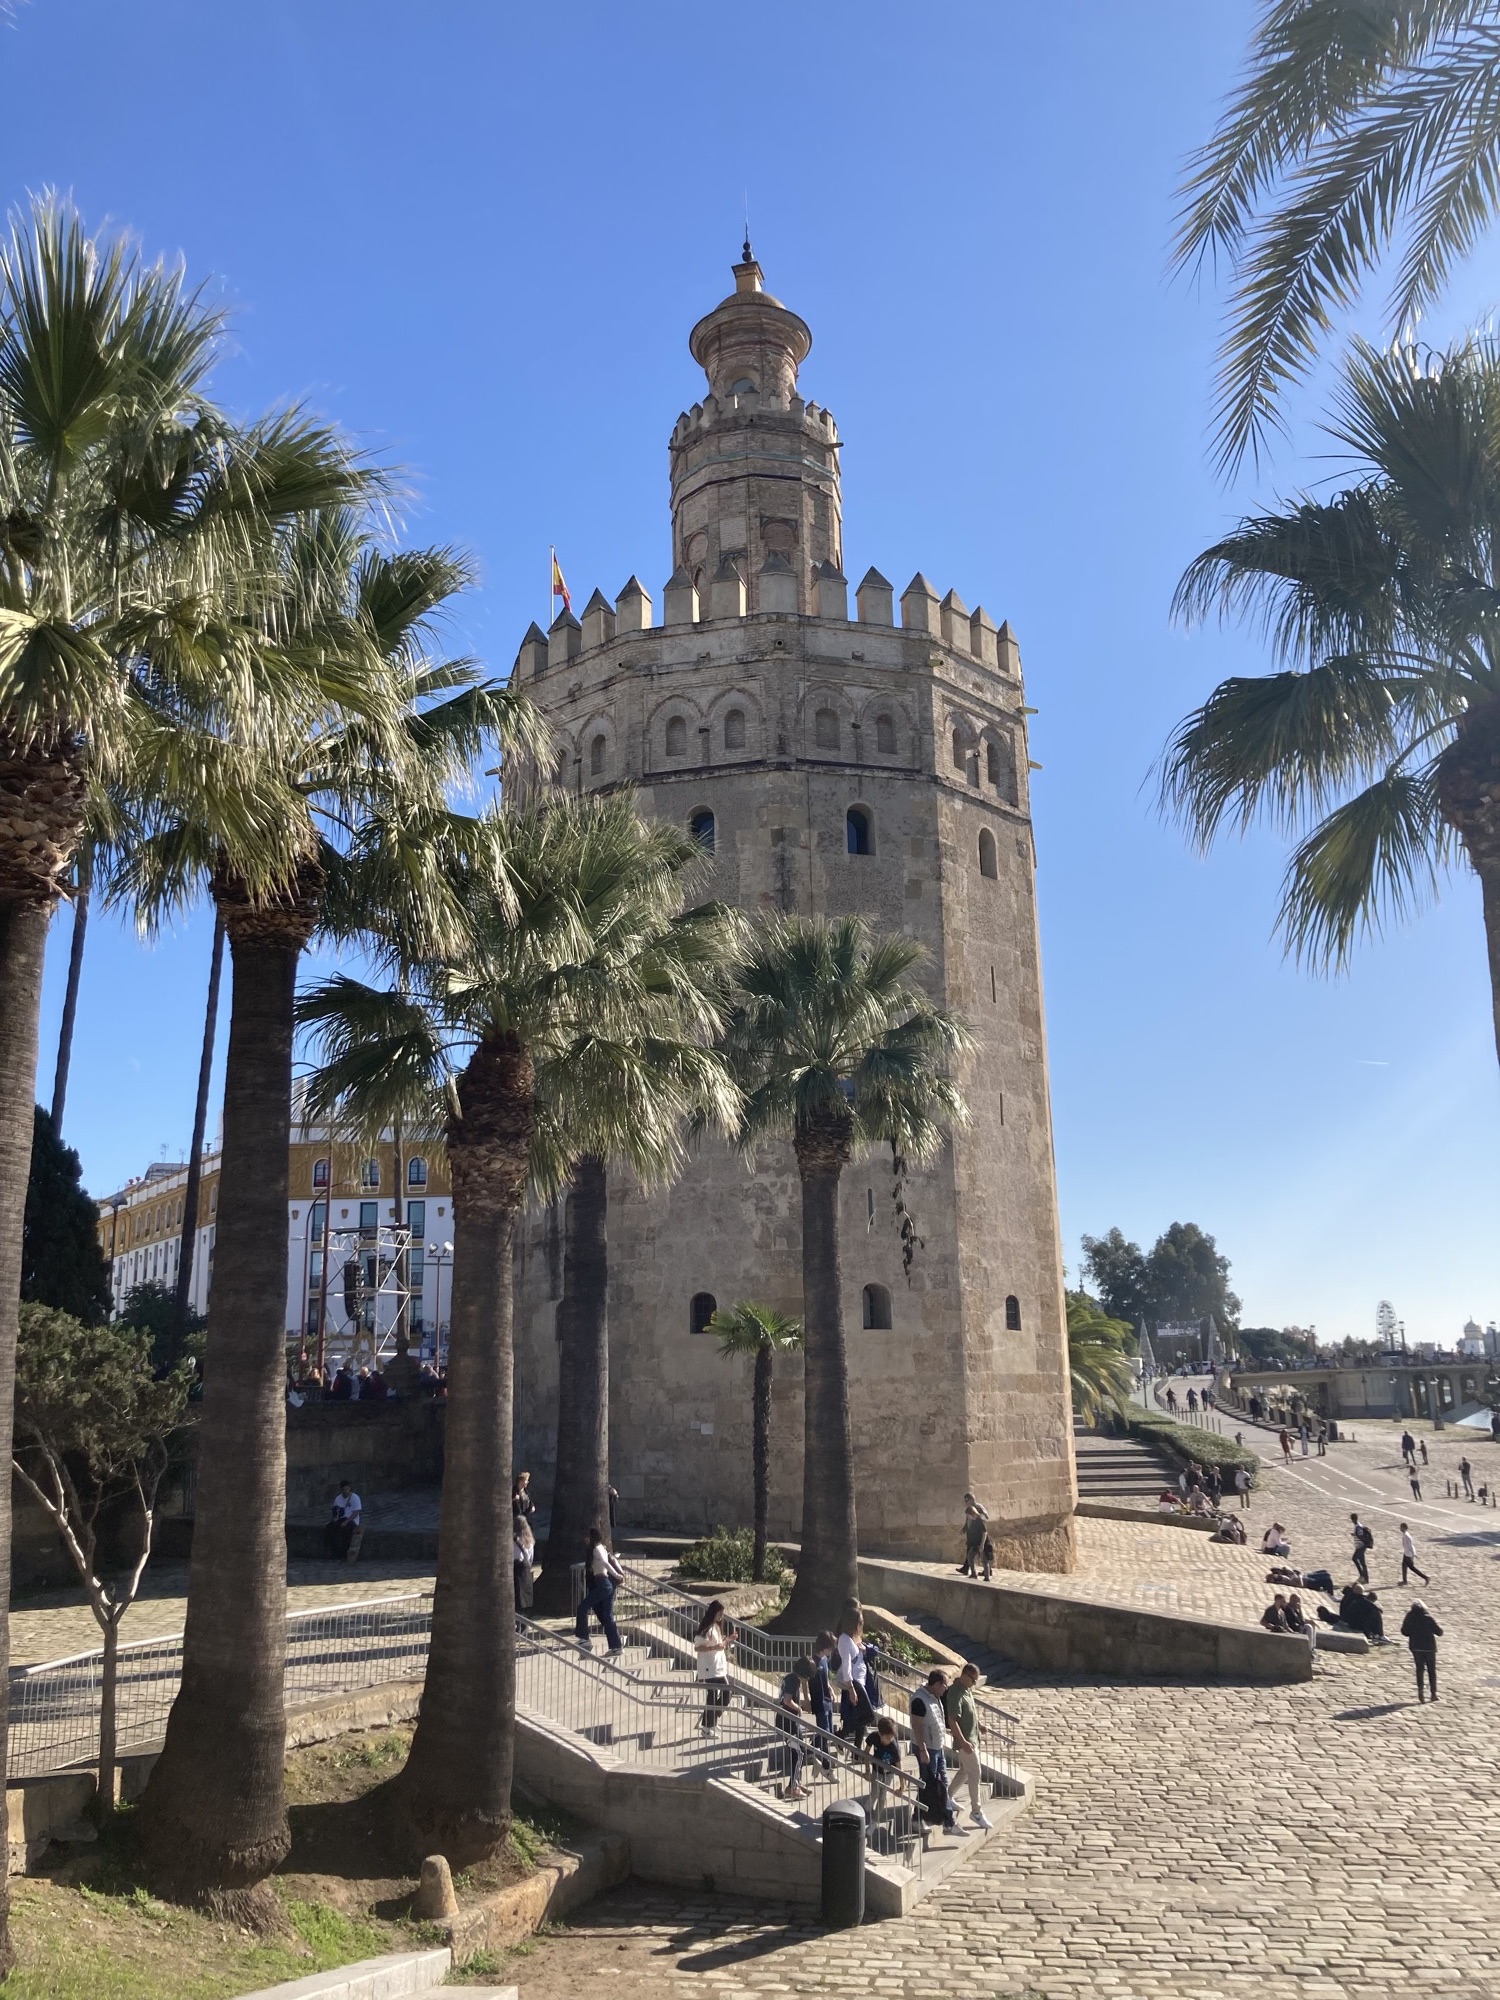 Torre del Oro (Goldturm), zwölfeckiger kompakter Turm in der Nähe der Brücke San Telmo über den Fluss Guadalquivir, der Turm ist von Palmen gesäumt, rundherum genießen Menschen die Sonne am Flussufer